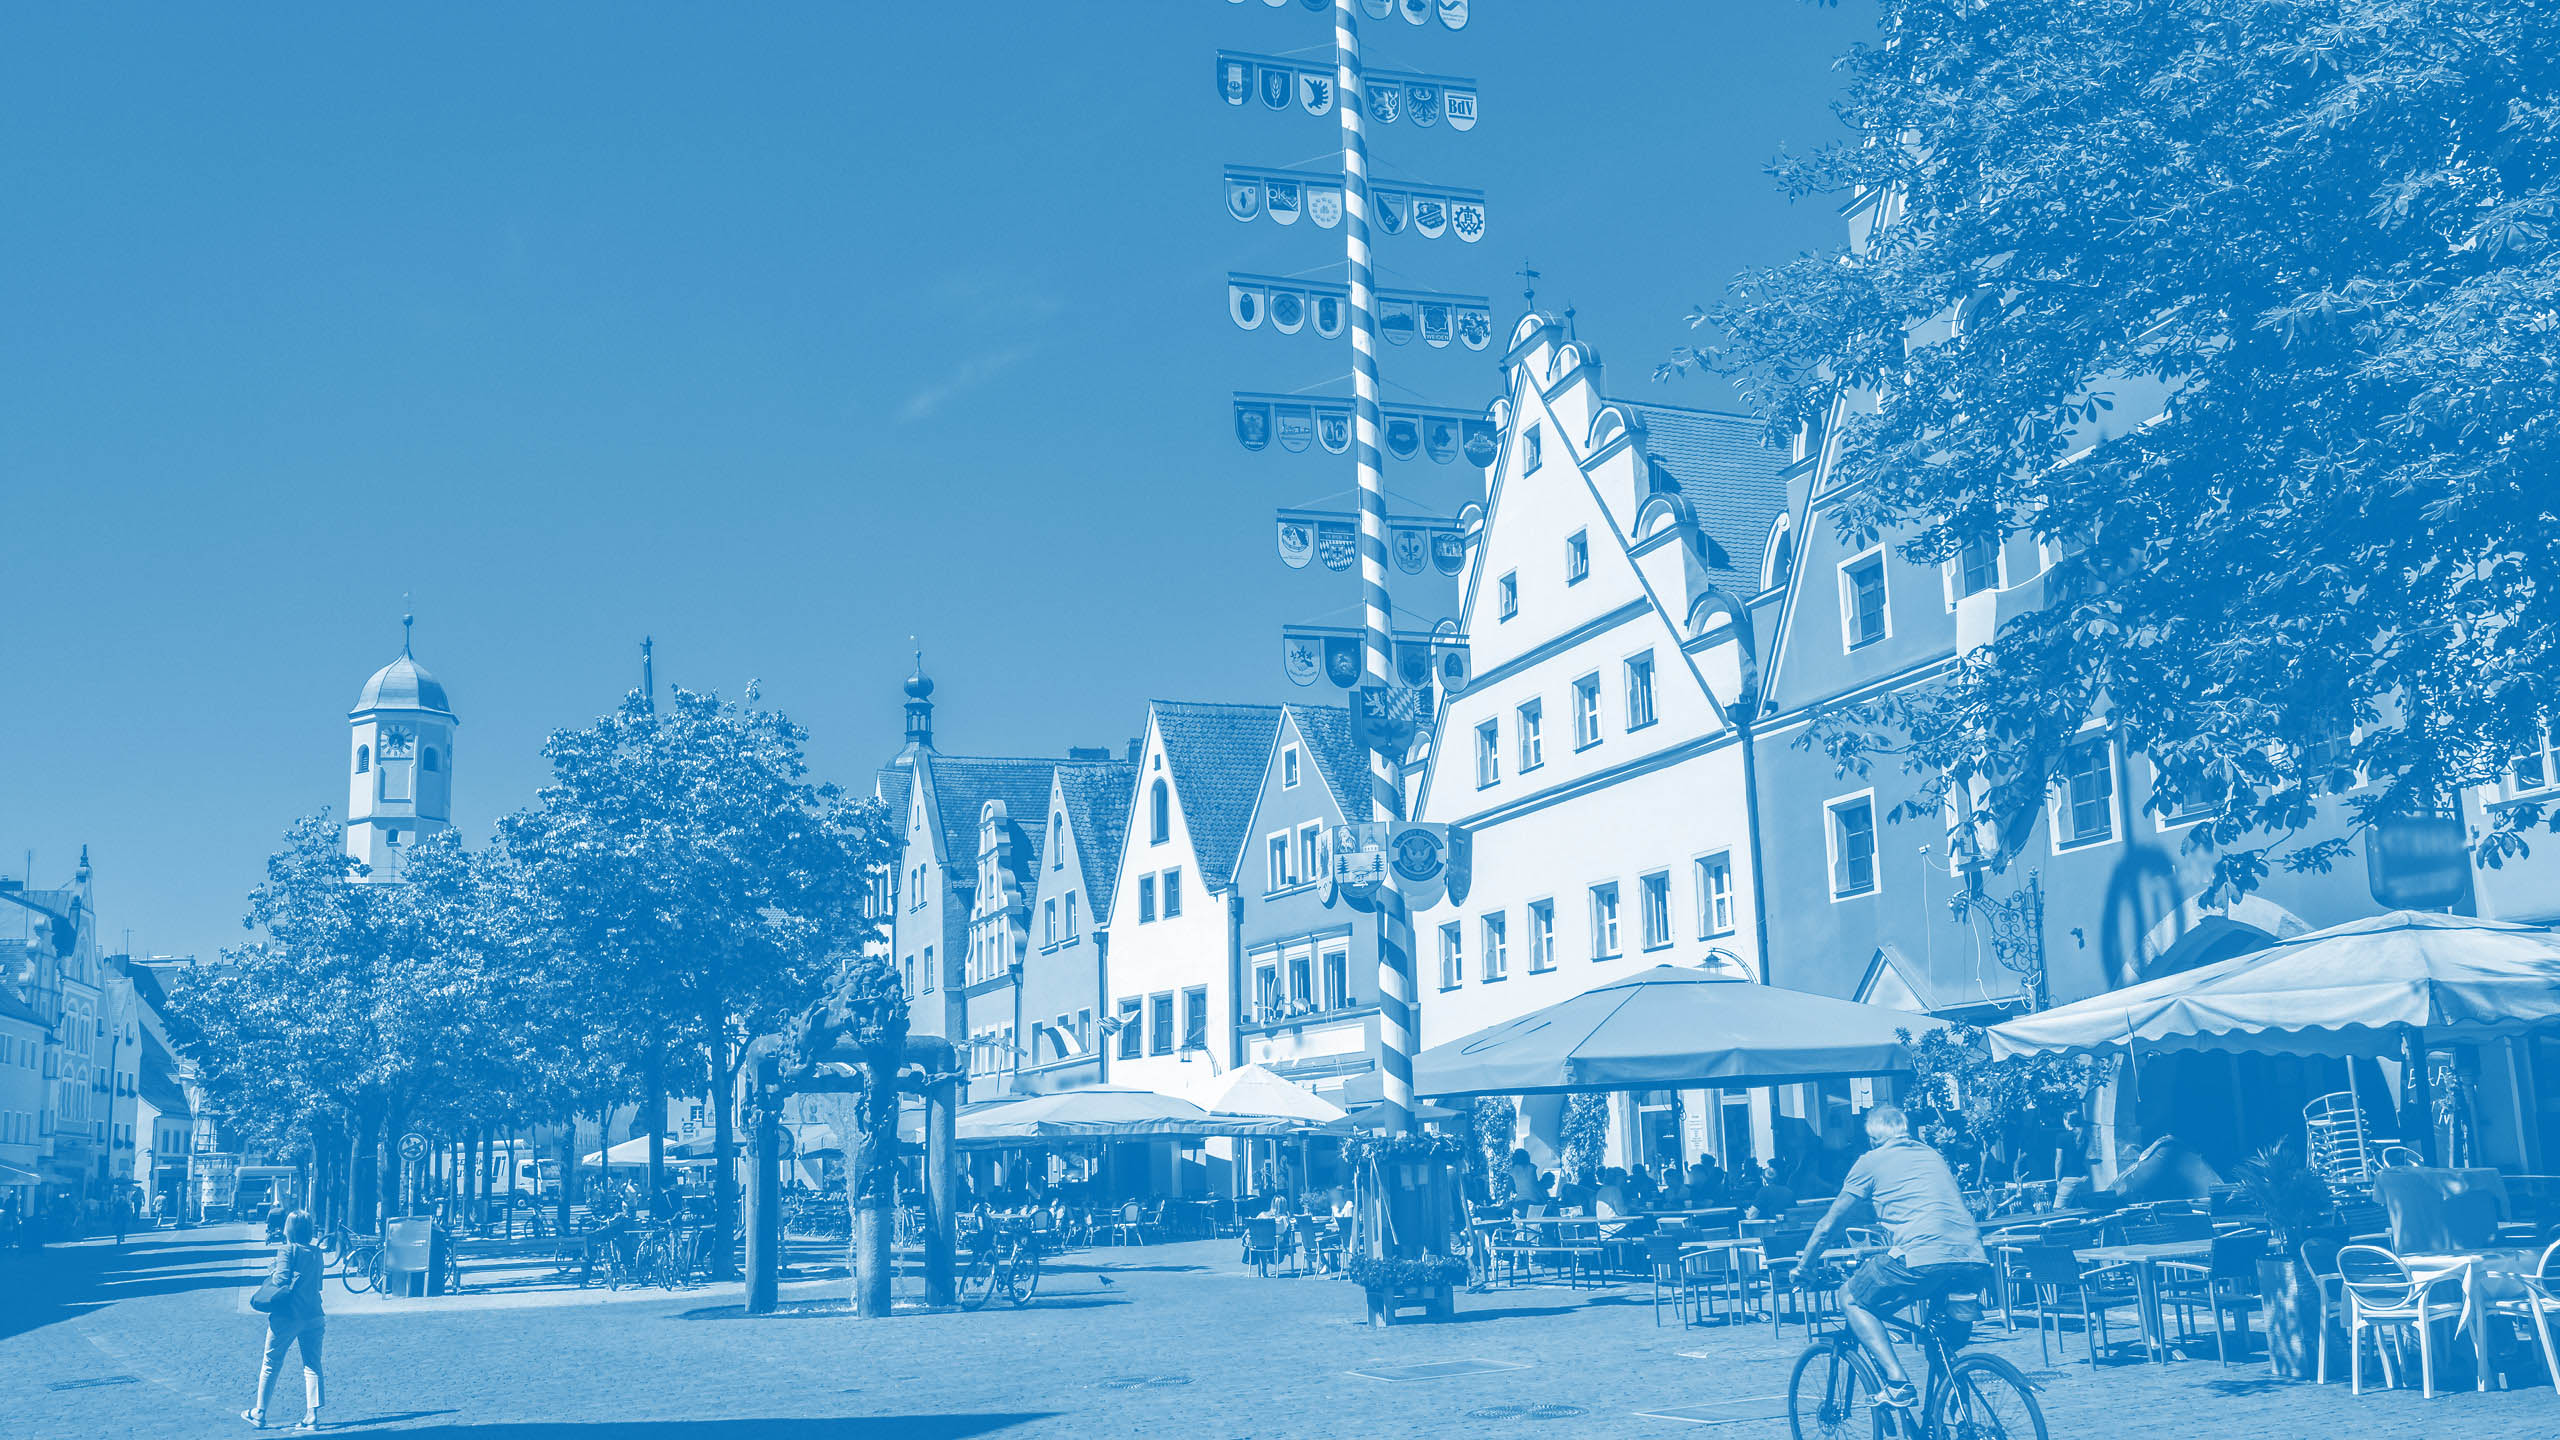 Blick auf den Weidener Marktplatz mit Maibaum, Häusern und Menschen zeigt die Verbundenheit von Oberpfalz Medien zur Region.